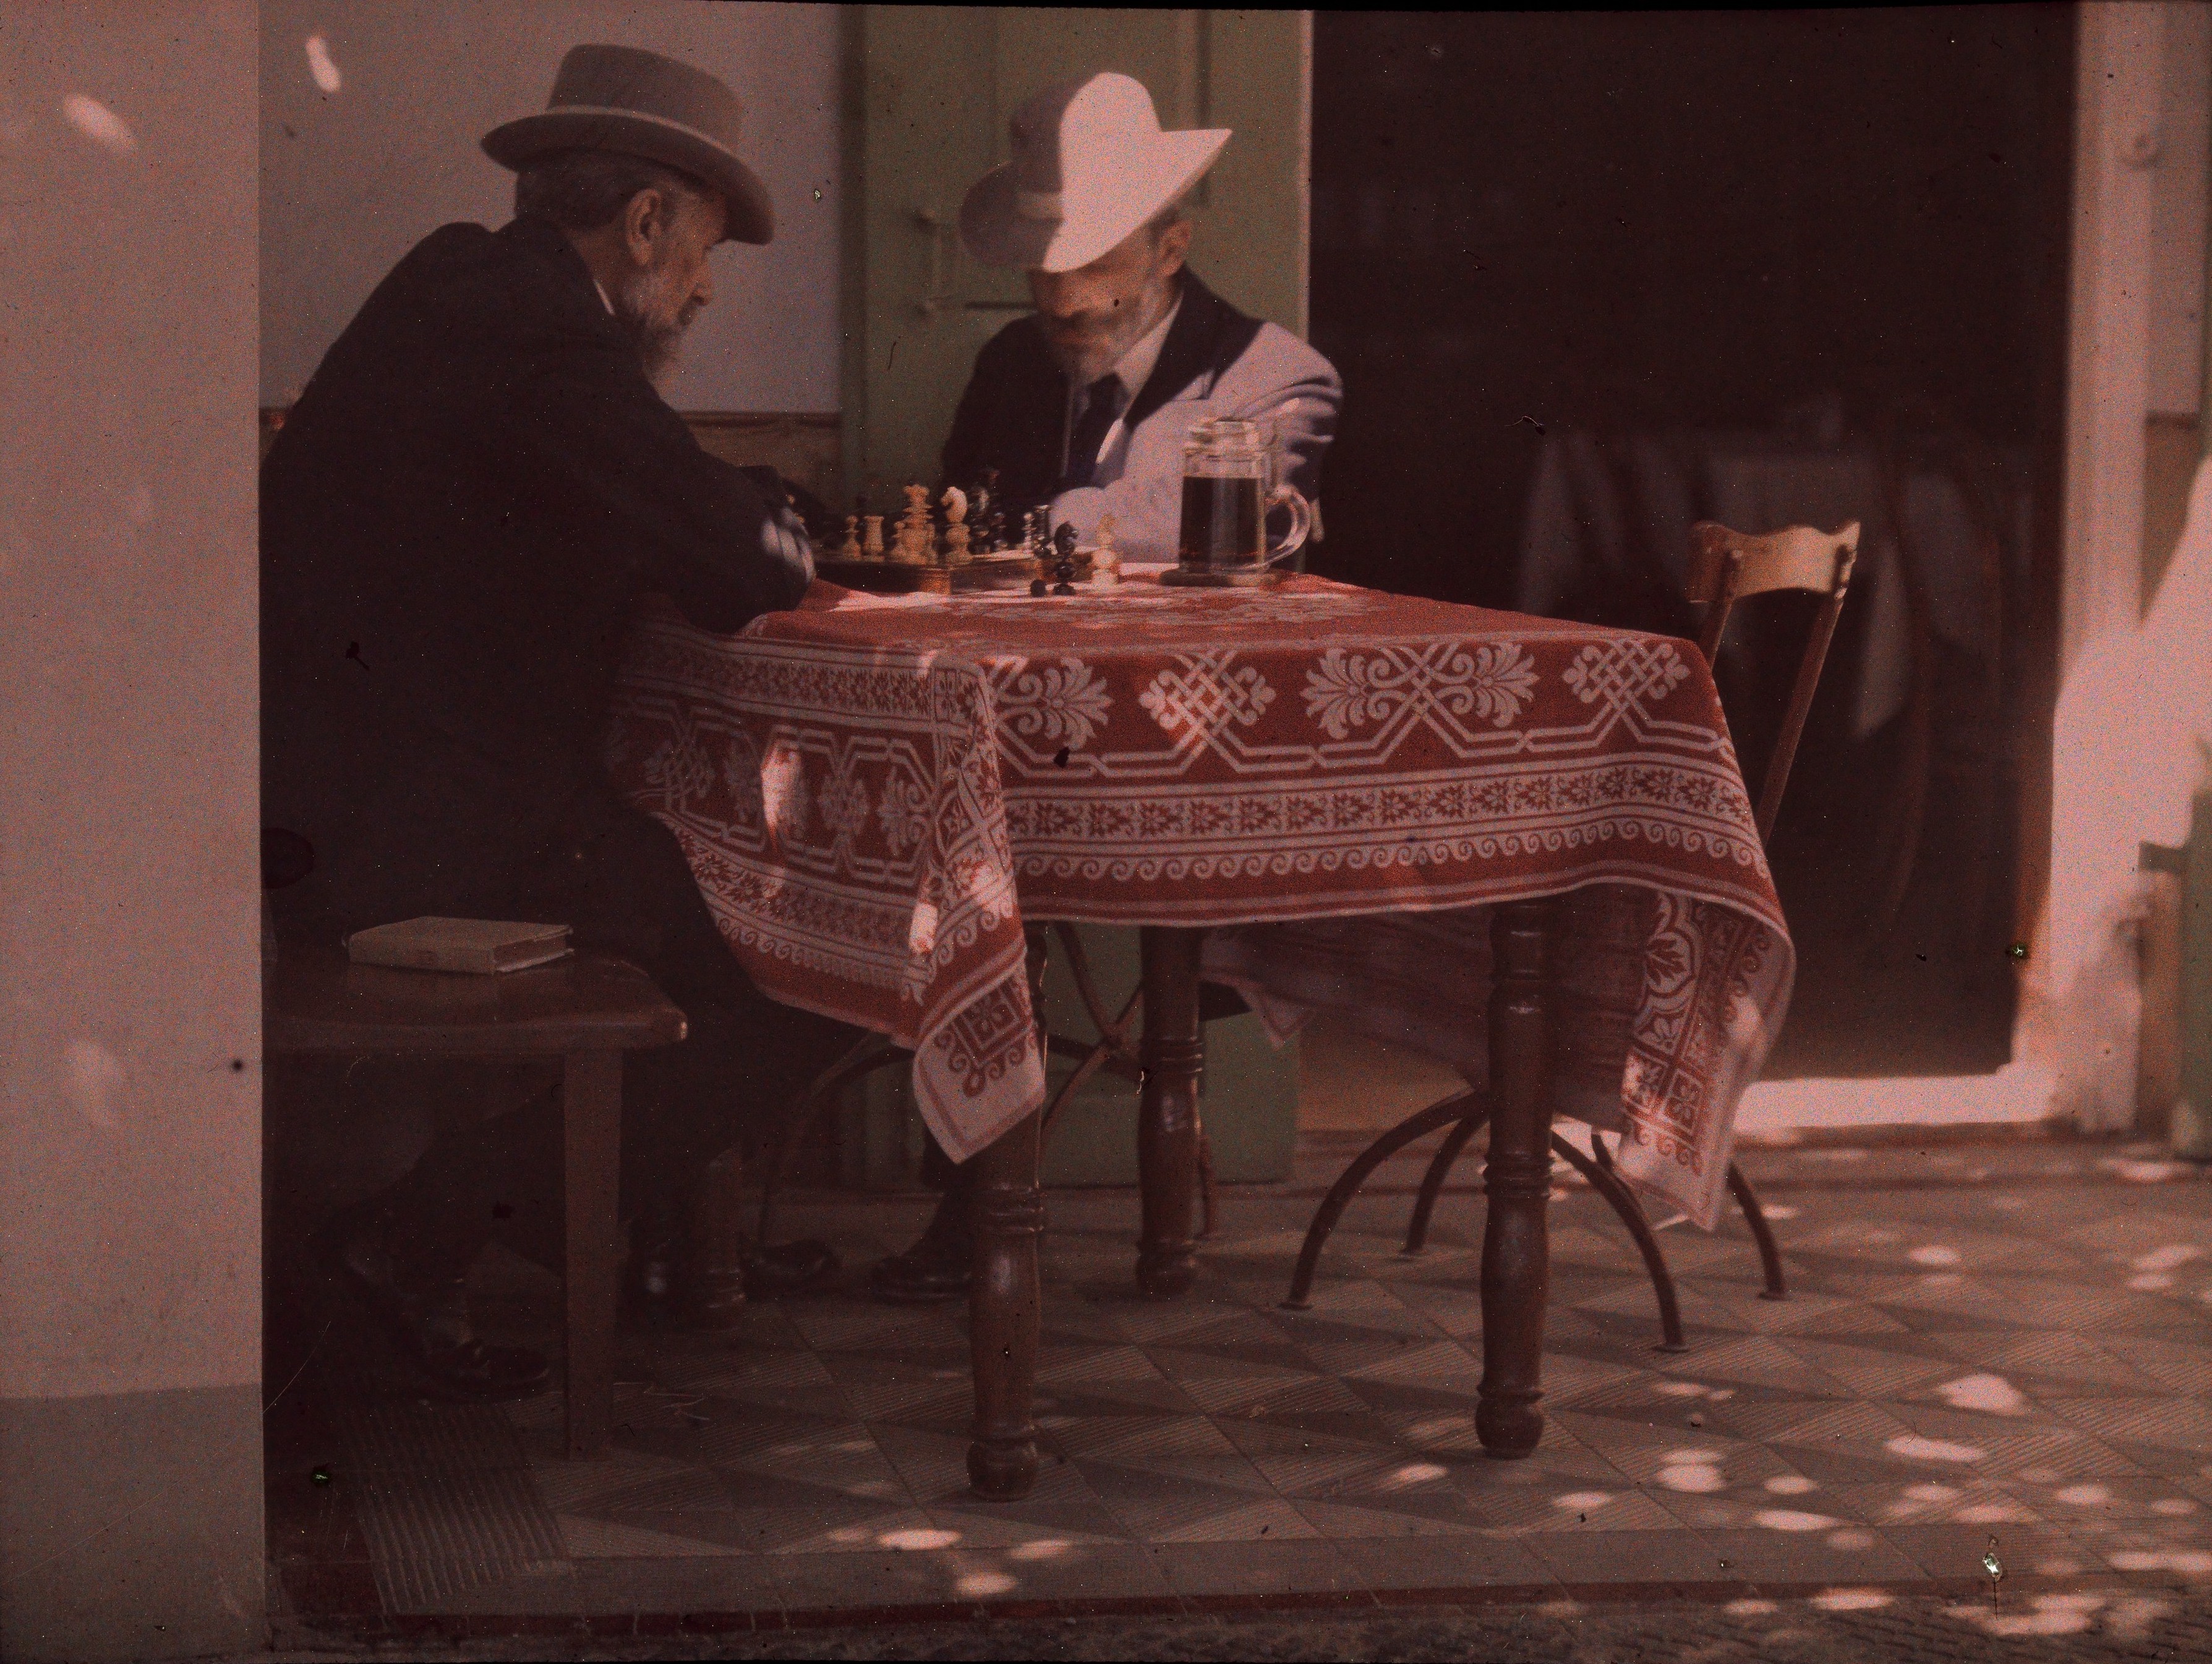 Двое мужчин играют в шахматы, Нью-Джерси, 1907. Автохром, фотограф Альфред Стиглиц